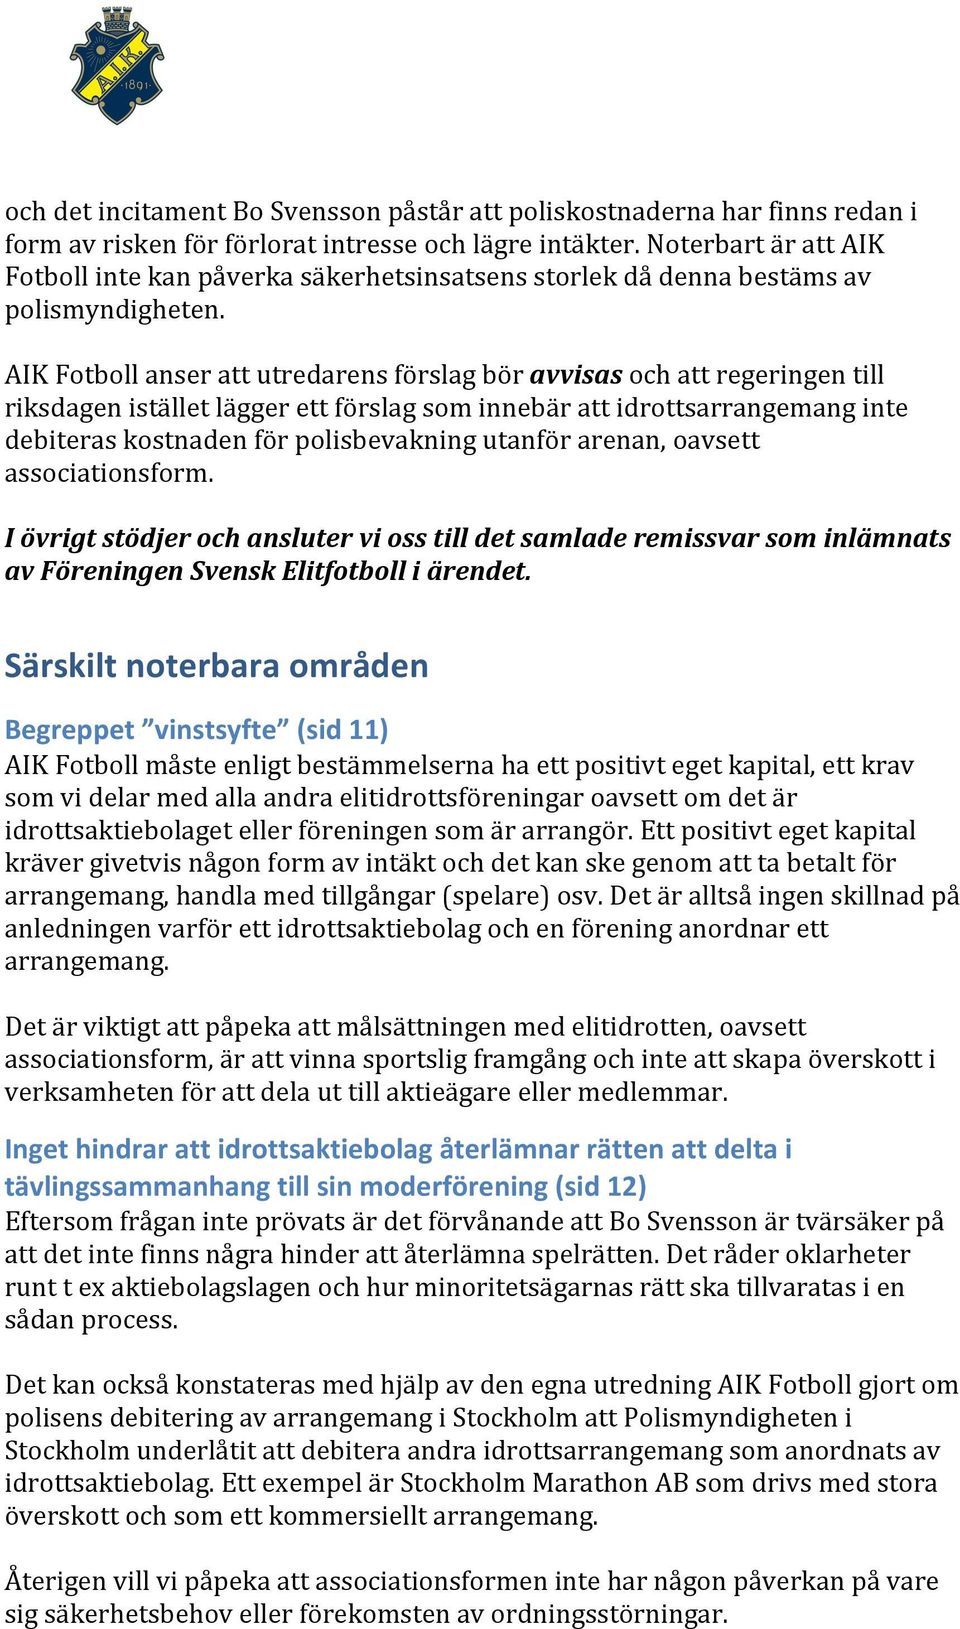 AIK Fotboll anser att utredarens förslag bör avvisas och att regeringen till riksdagen istället lägger ett förslag som innebär att idrottsarrangemang inte debiteras kostnaden för polisbevakning